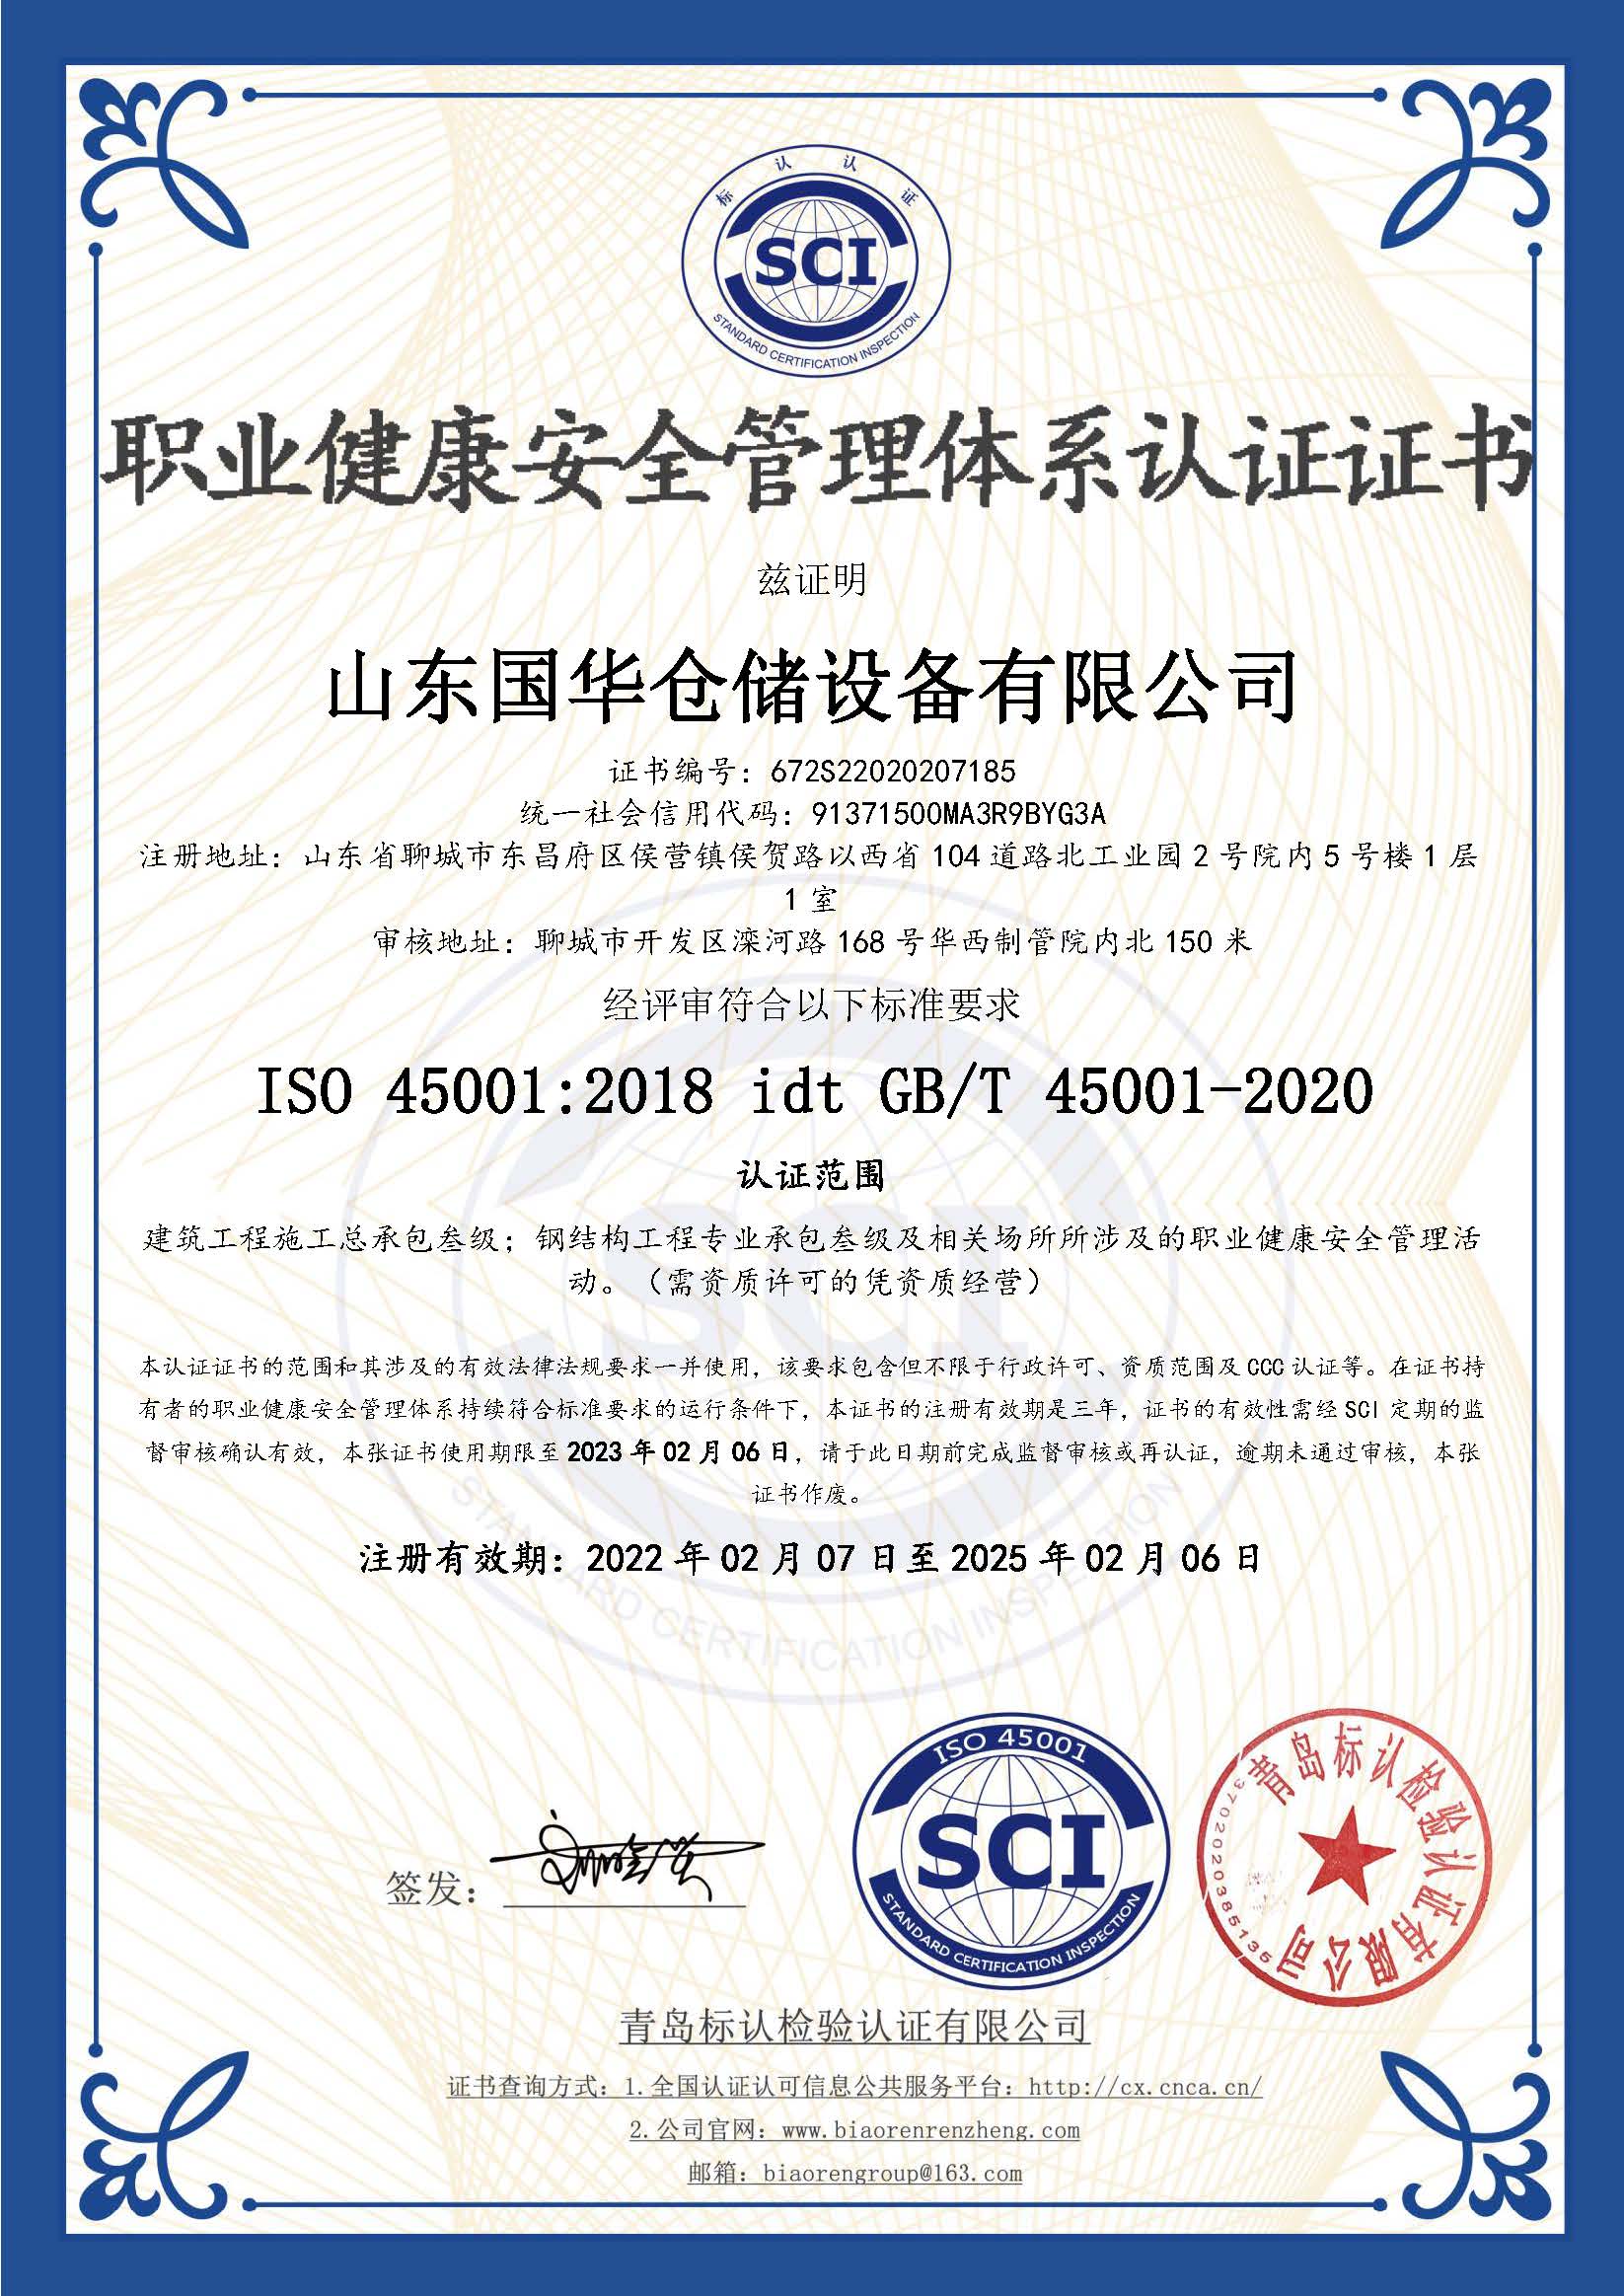 天津钢板仓职业健康安全管理体系认证证书